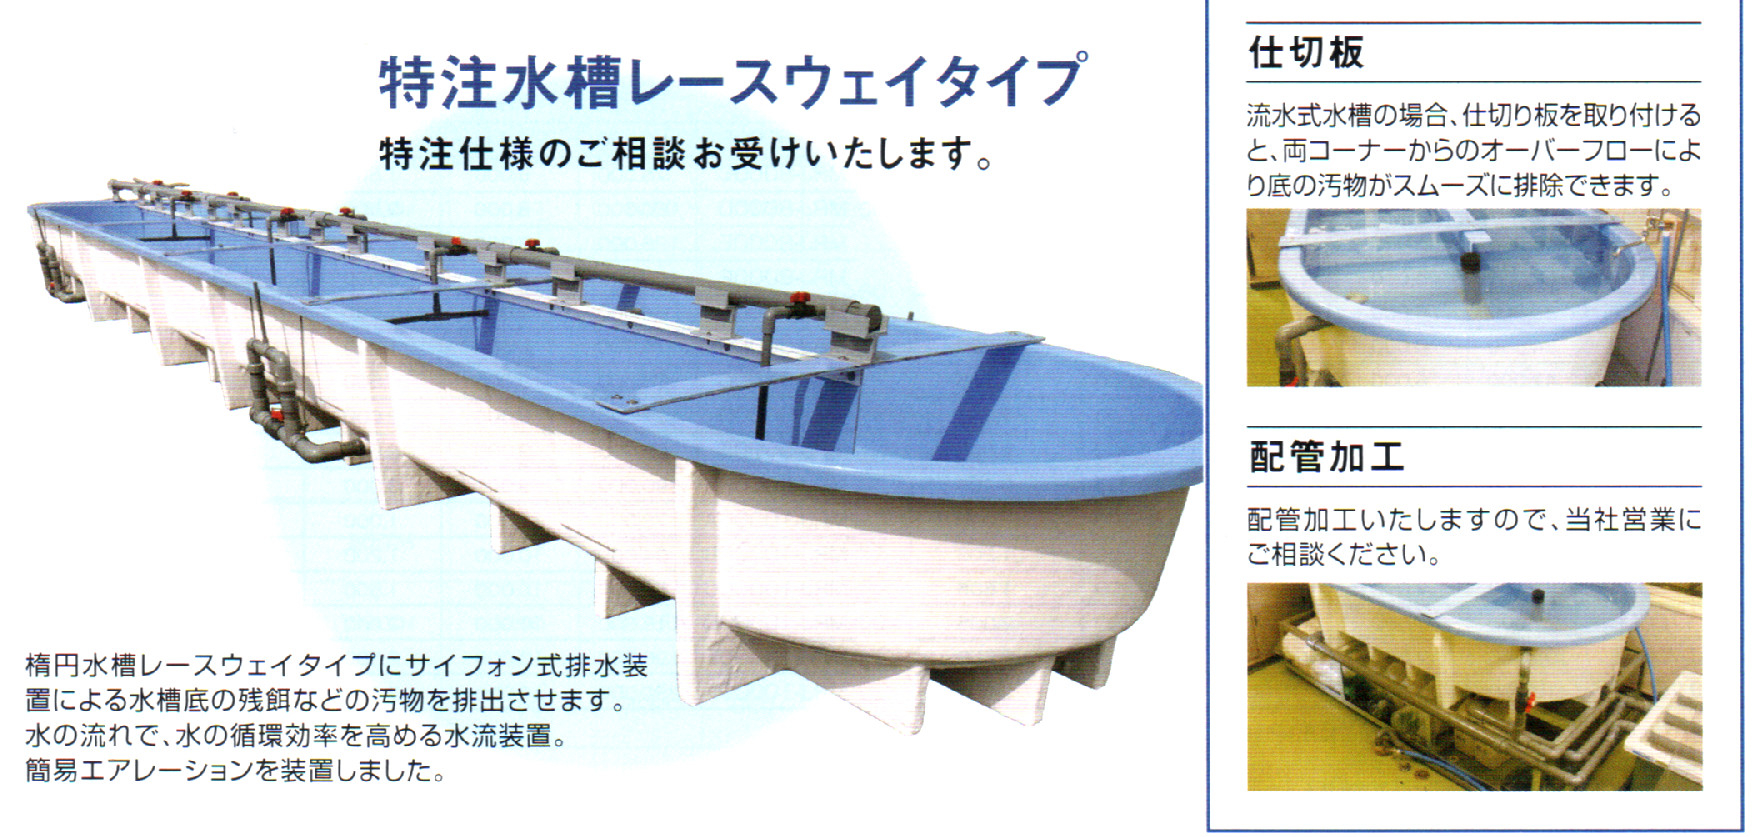 73077円 (税込) ☆カイスイマレン 角型槽 KH1200水槽仕様 ステンレス補強付